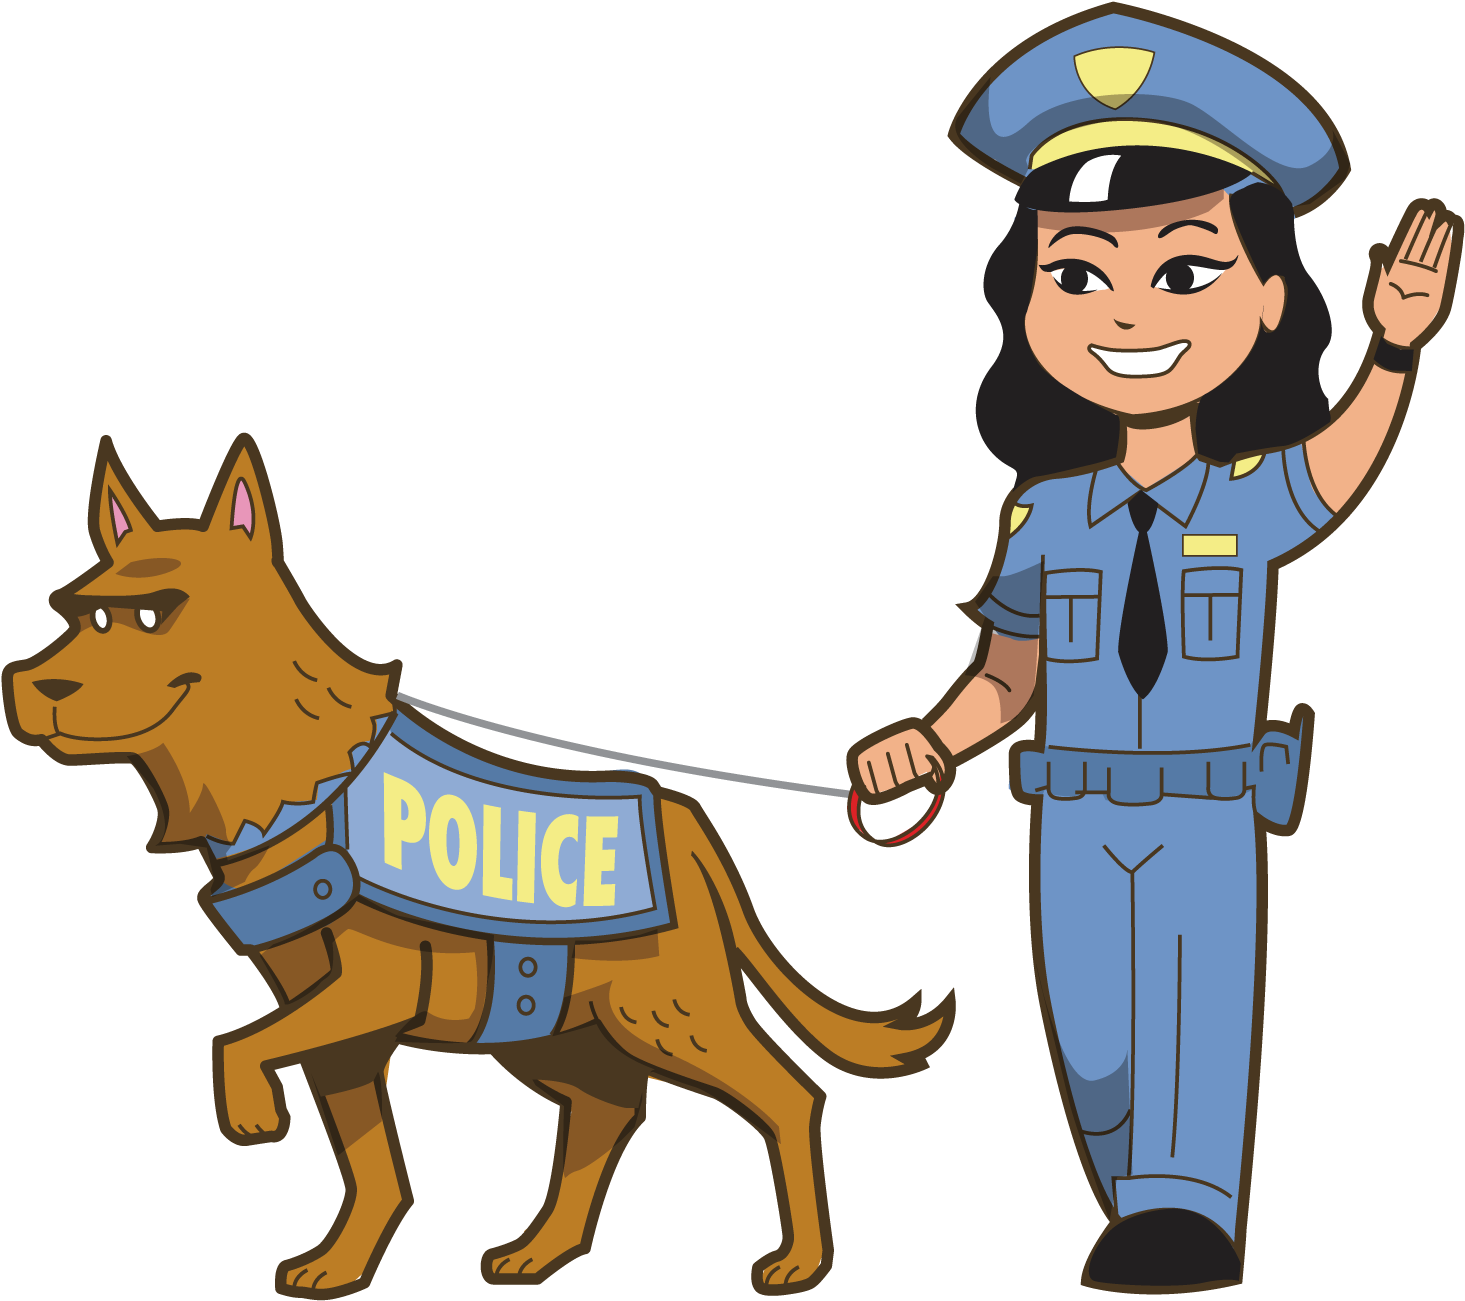 Police Officerand K9 Unit Cartoon PNG image